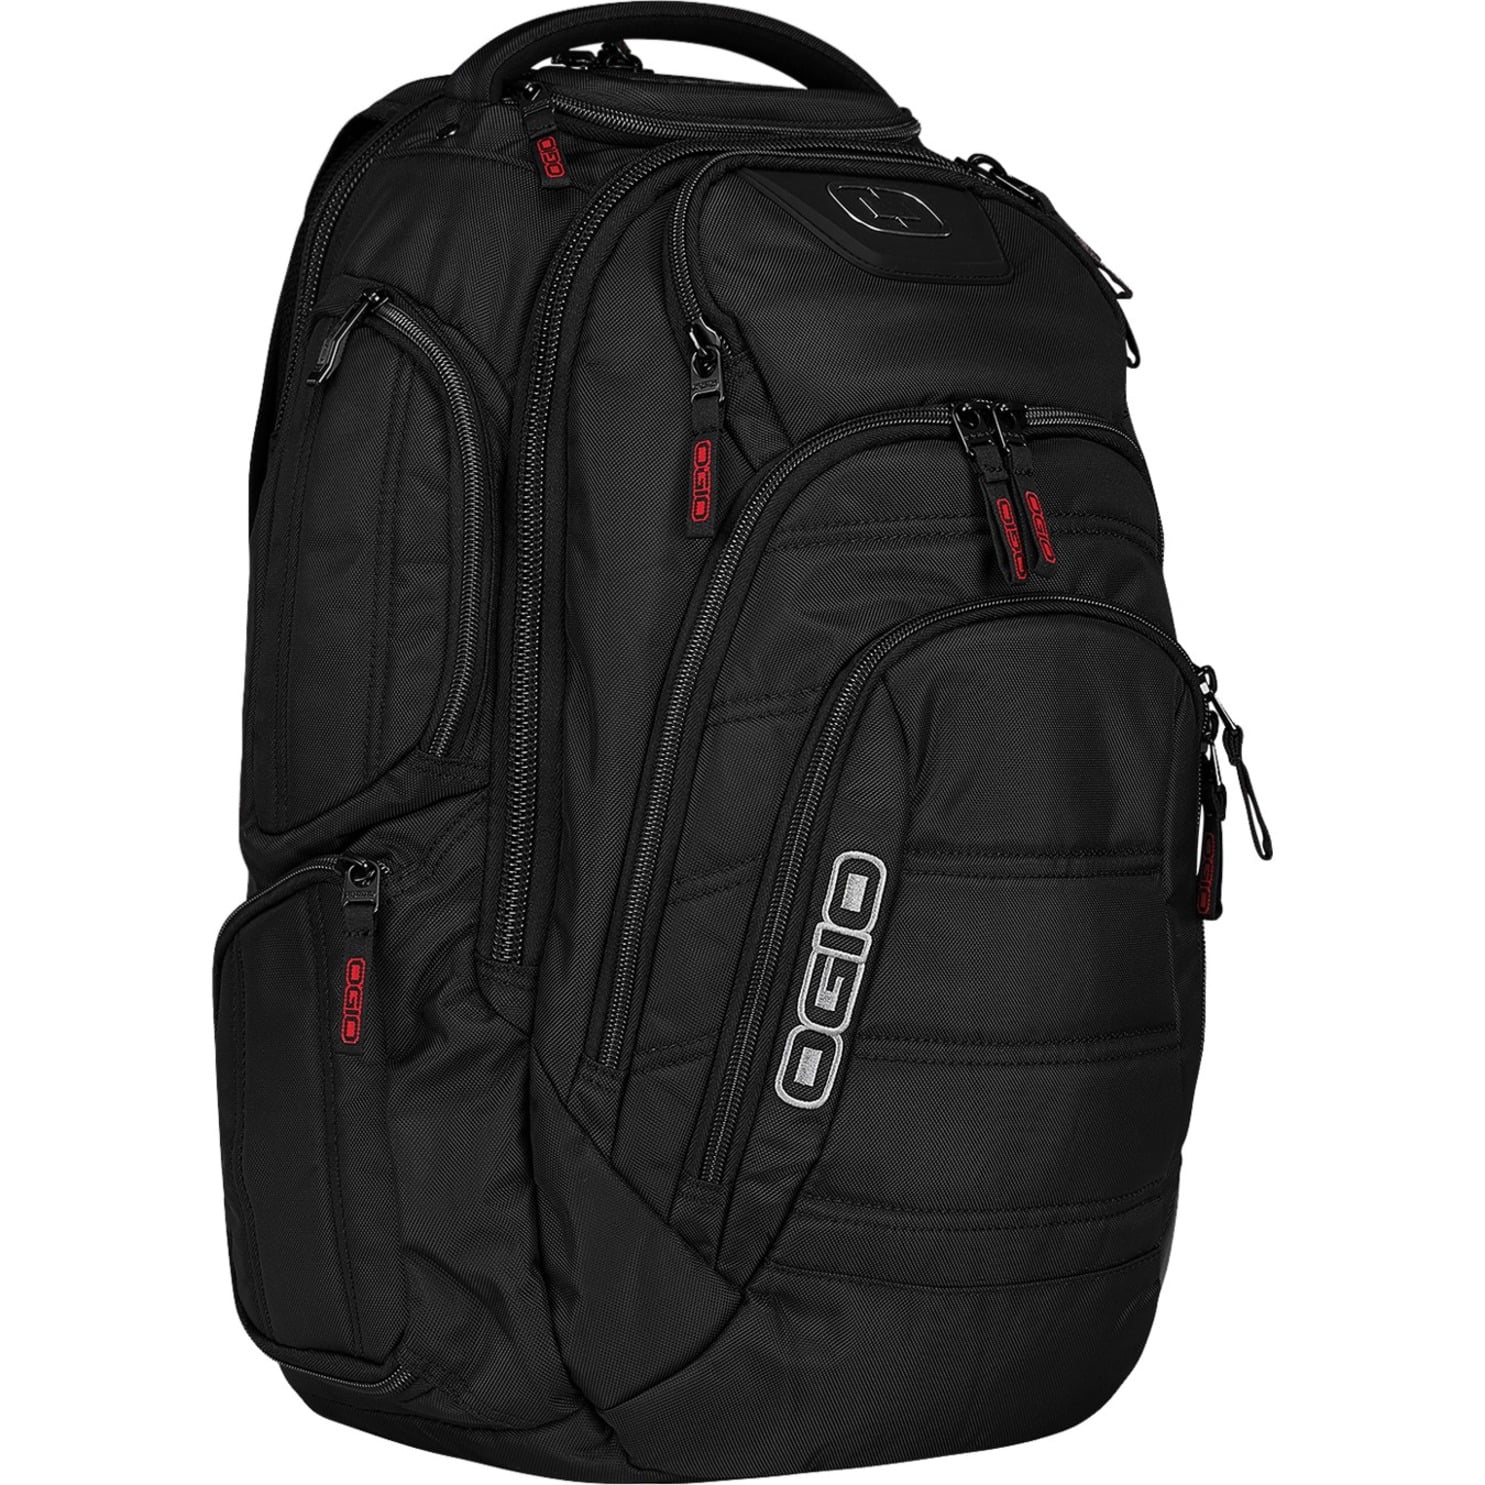 Ogio Renegade Rss Backpack Black | eBay